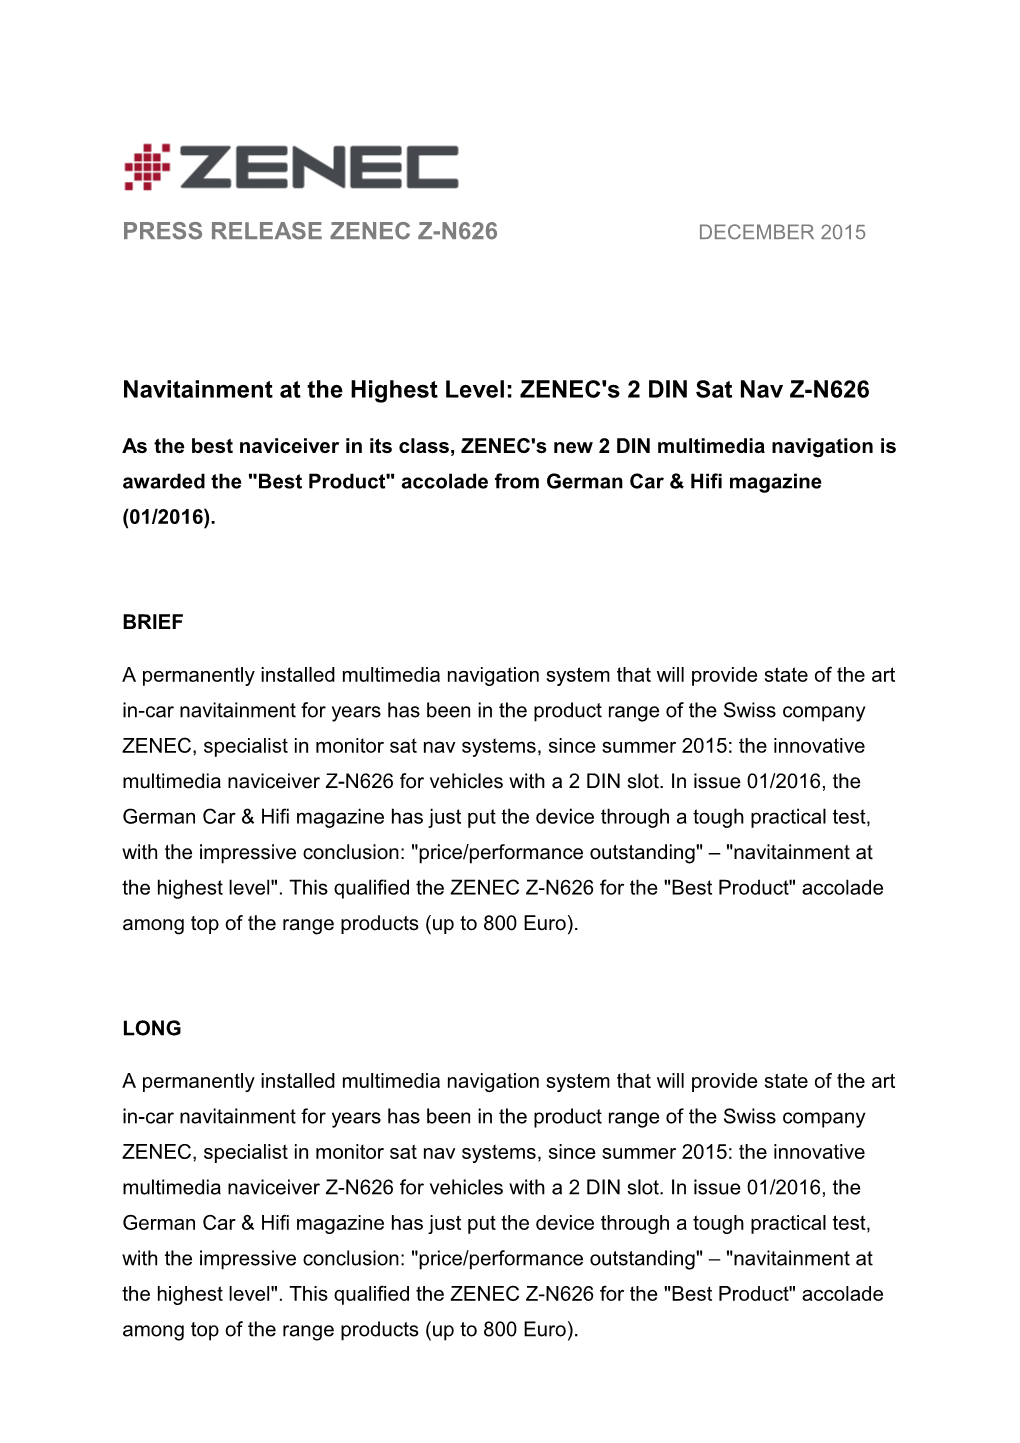 Navitainment at the Highest Level: ZENEC's 2 DIN Sat Nav Z-N626